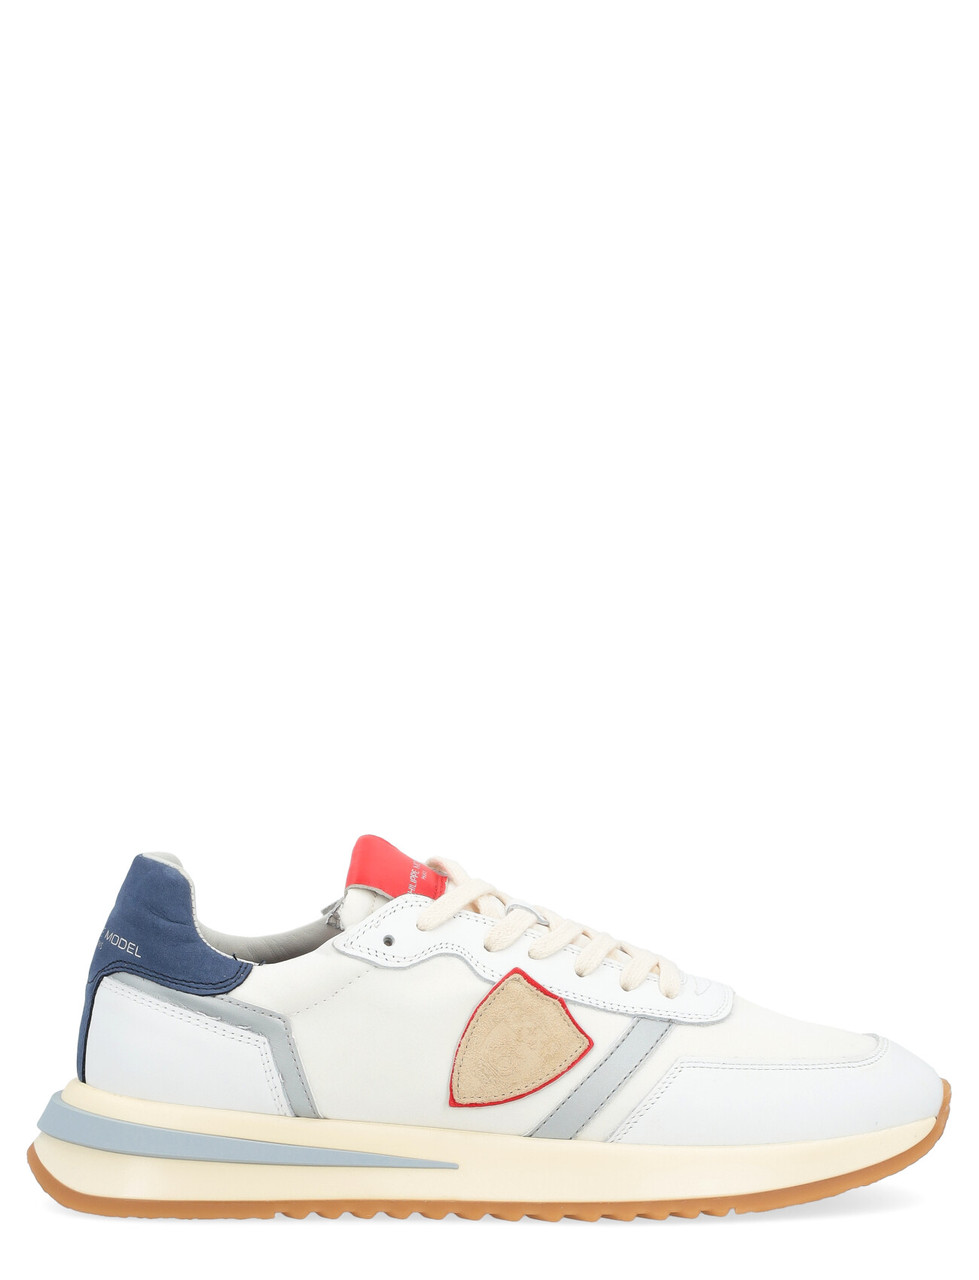 Sneaker Philippe Model Tropez 2.1 bianca blu e rossa | H-Brands